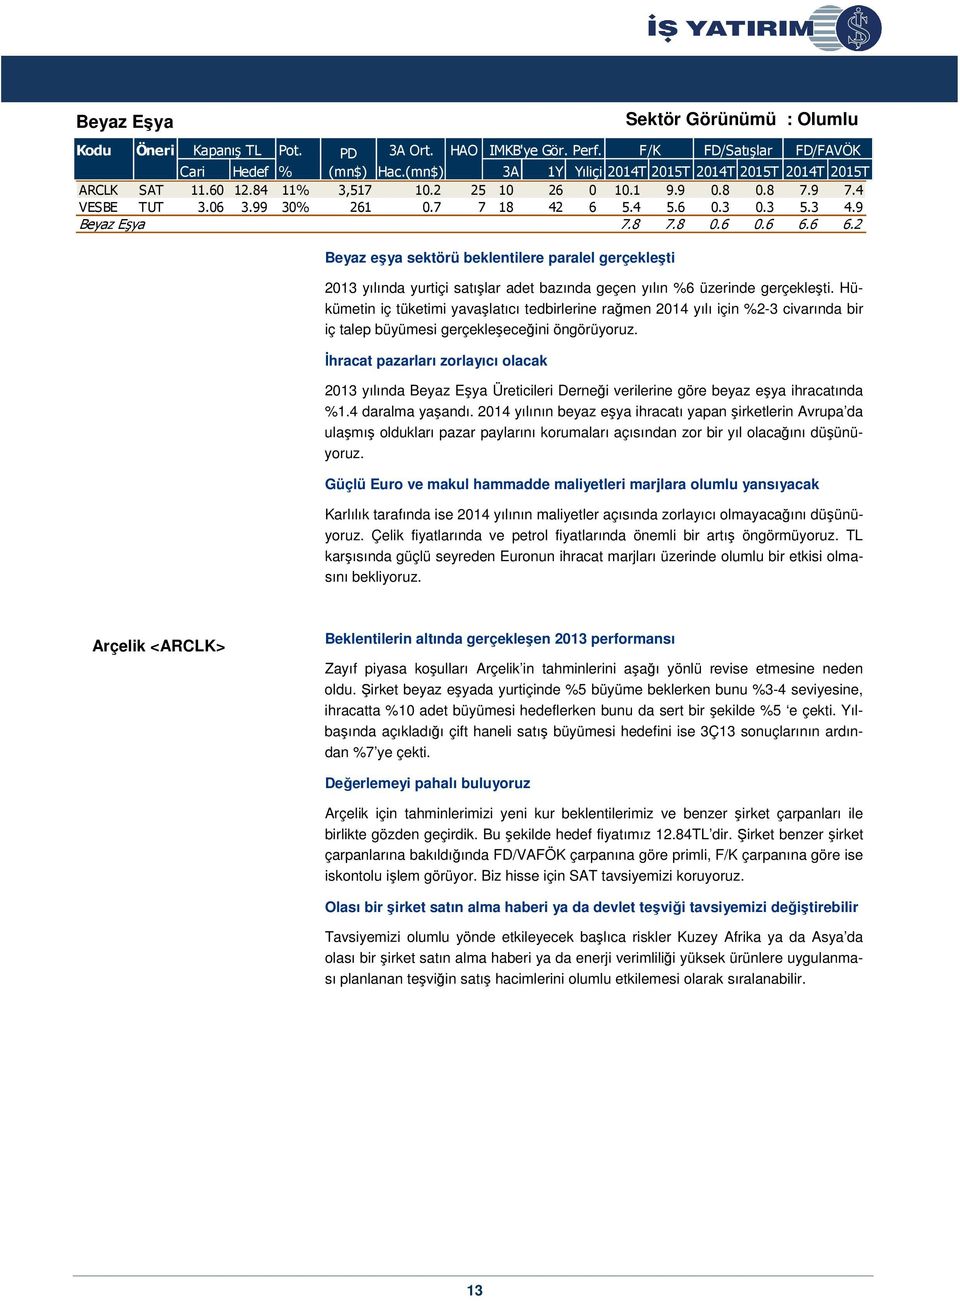 9 Beyaz Eşya 7.8 7.8 0.6 0.6 6.6 6.2 Beyaz eşya sektörü beklentilere paralel gerçekleşti 2013 yılında yurtiçi satışlar adet bazında geçen yılın %6 üzerinde gerçekleşti.